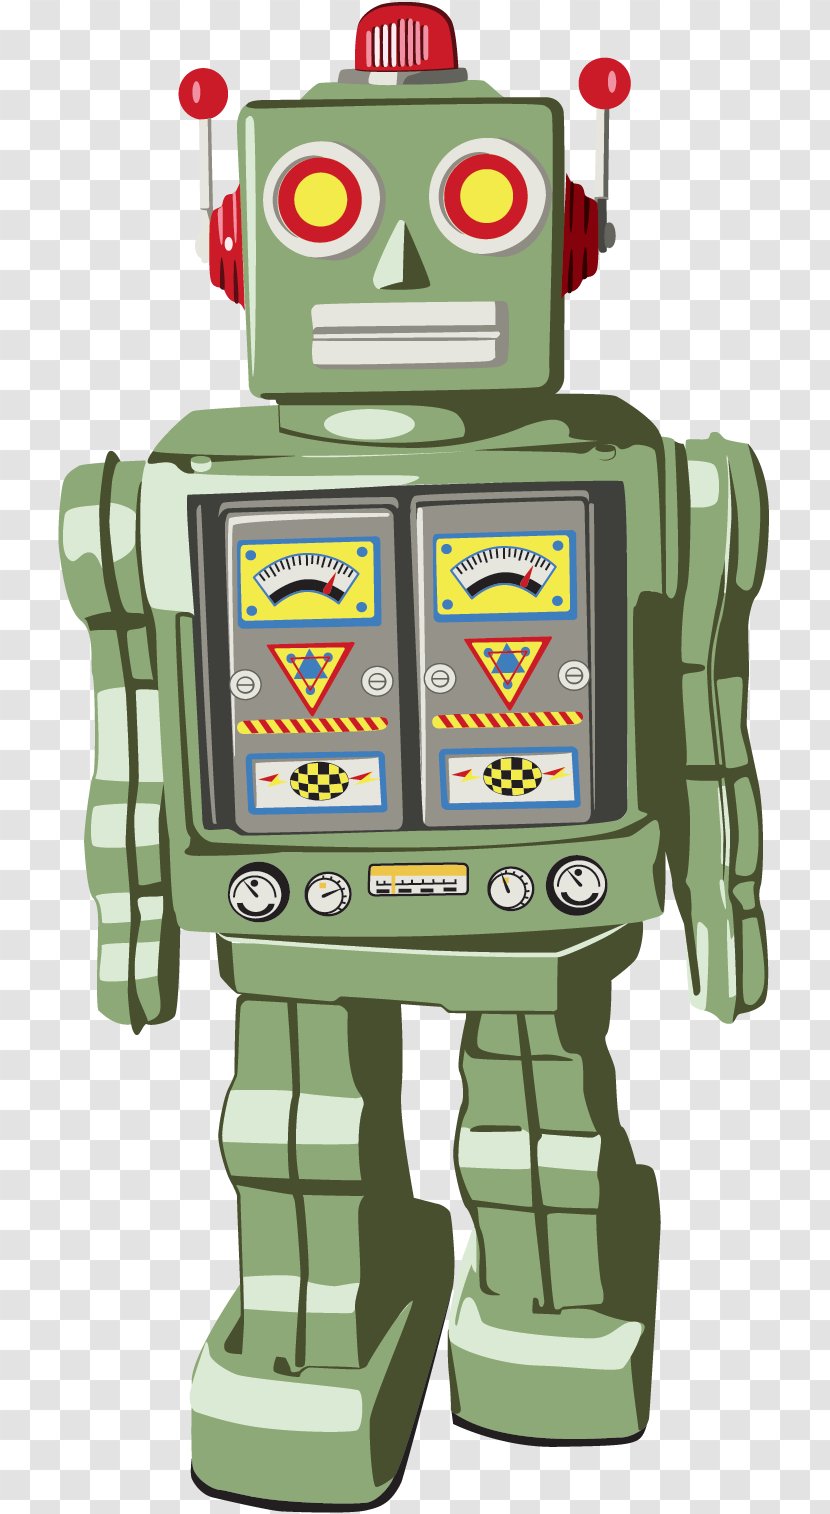 T-shirt Robot Toy Clothing - Shirtdress - Robots Transparent PNG